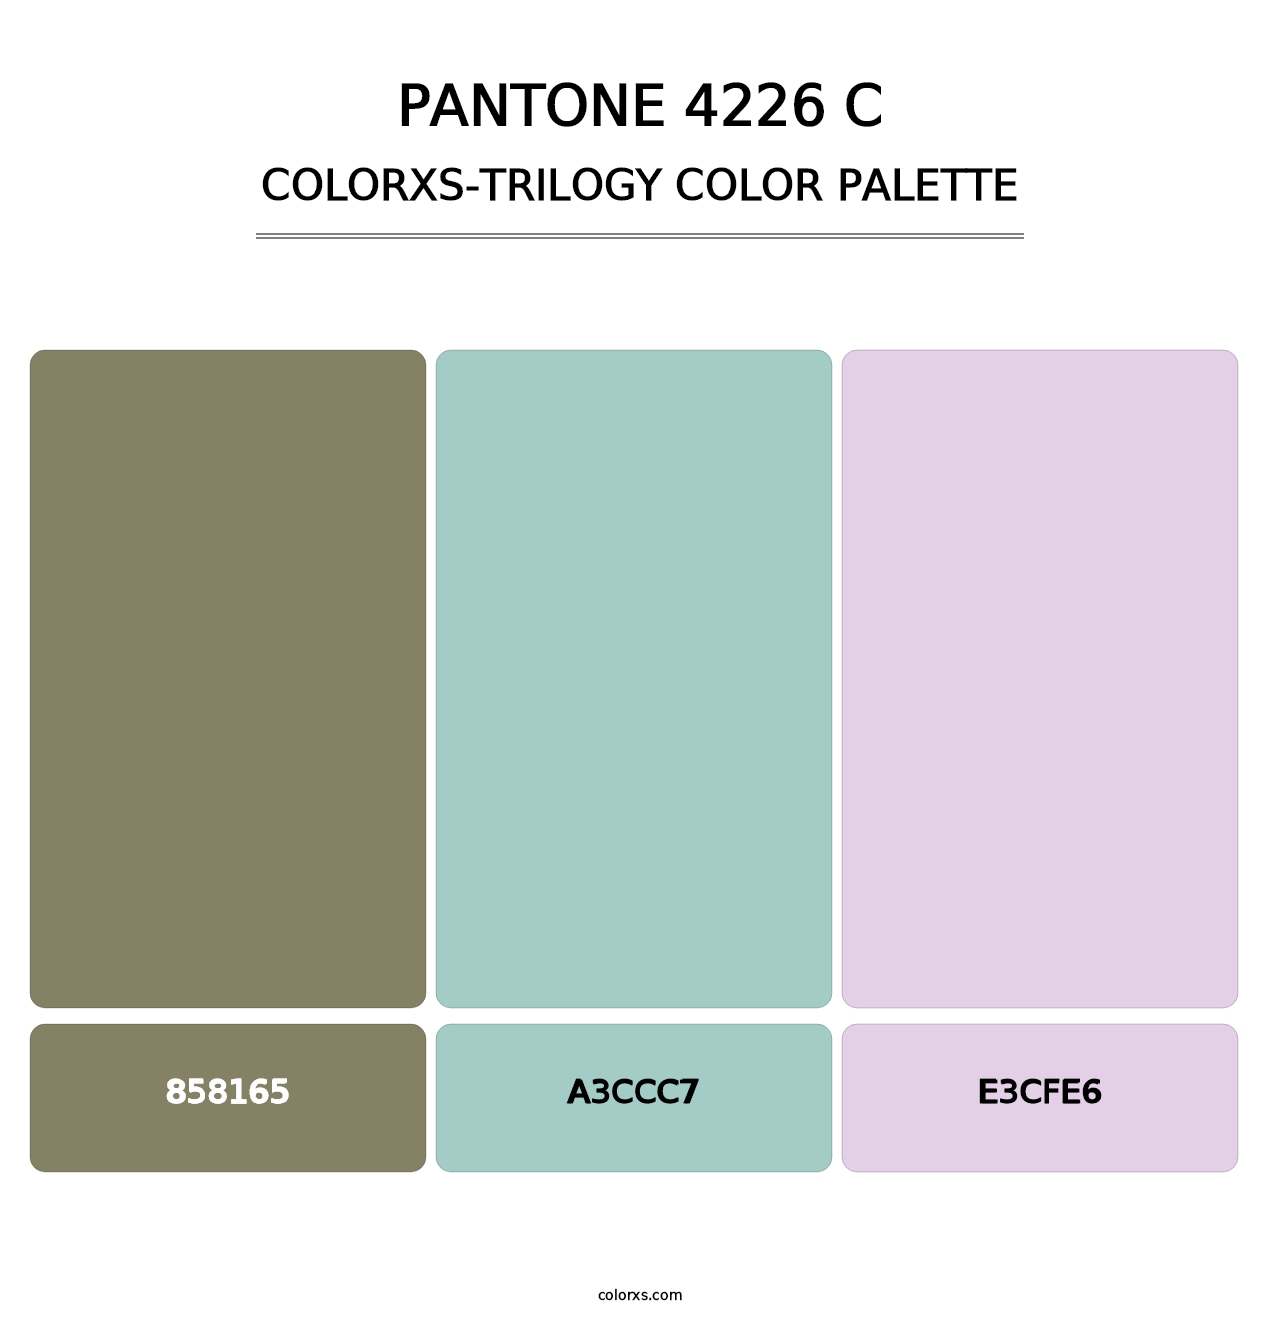 PANTONE 4226 C - Colorxs Trilogy Palette